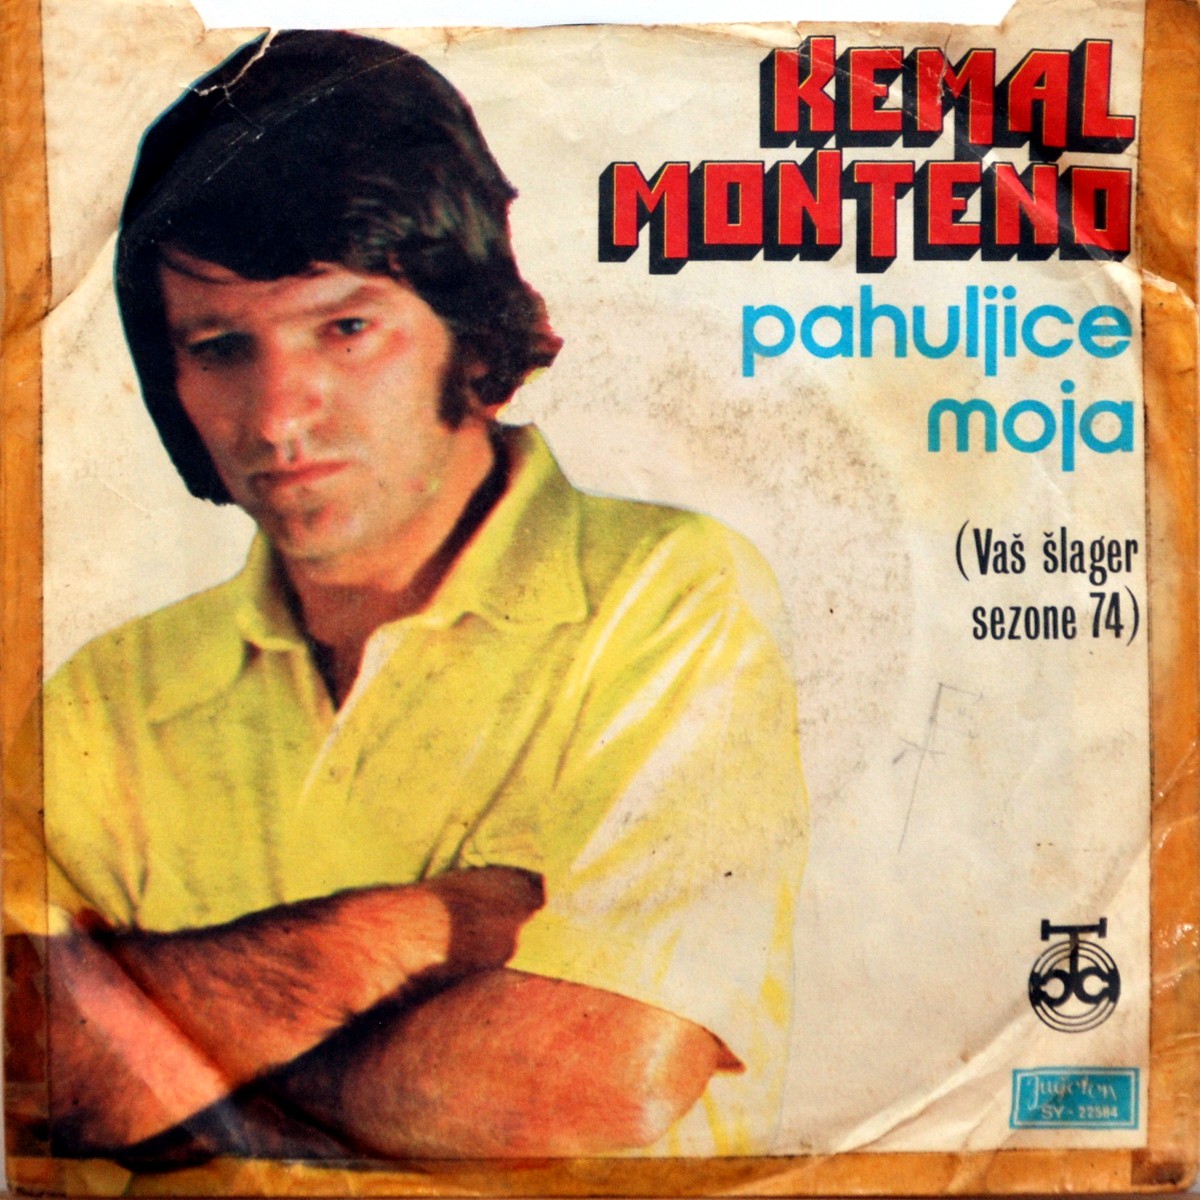 Kemal Monteno 1974 Mi smo ljubav a